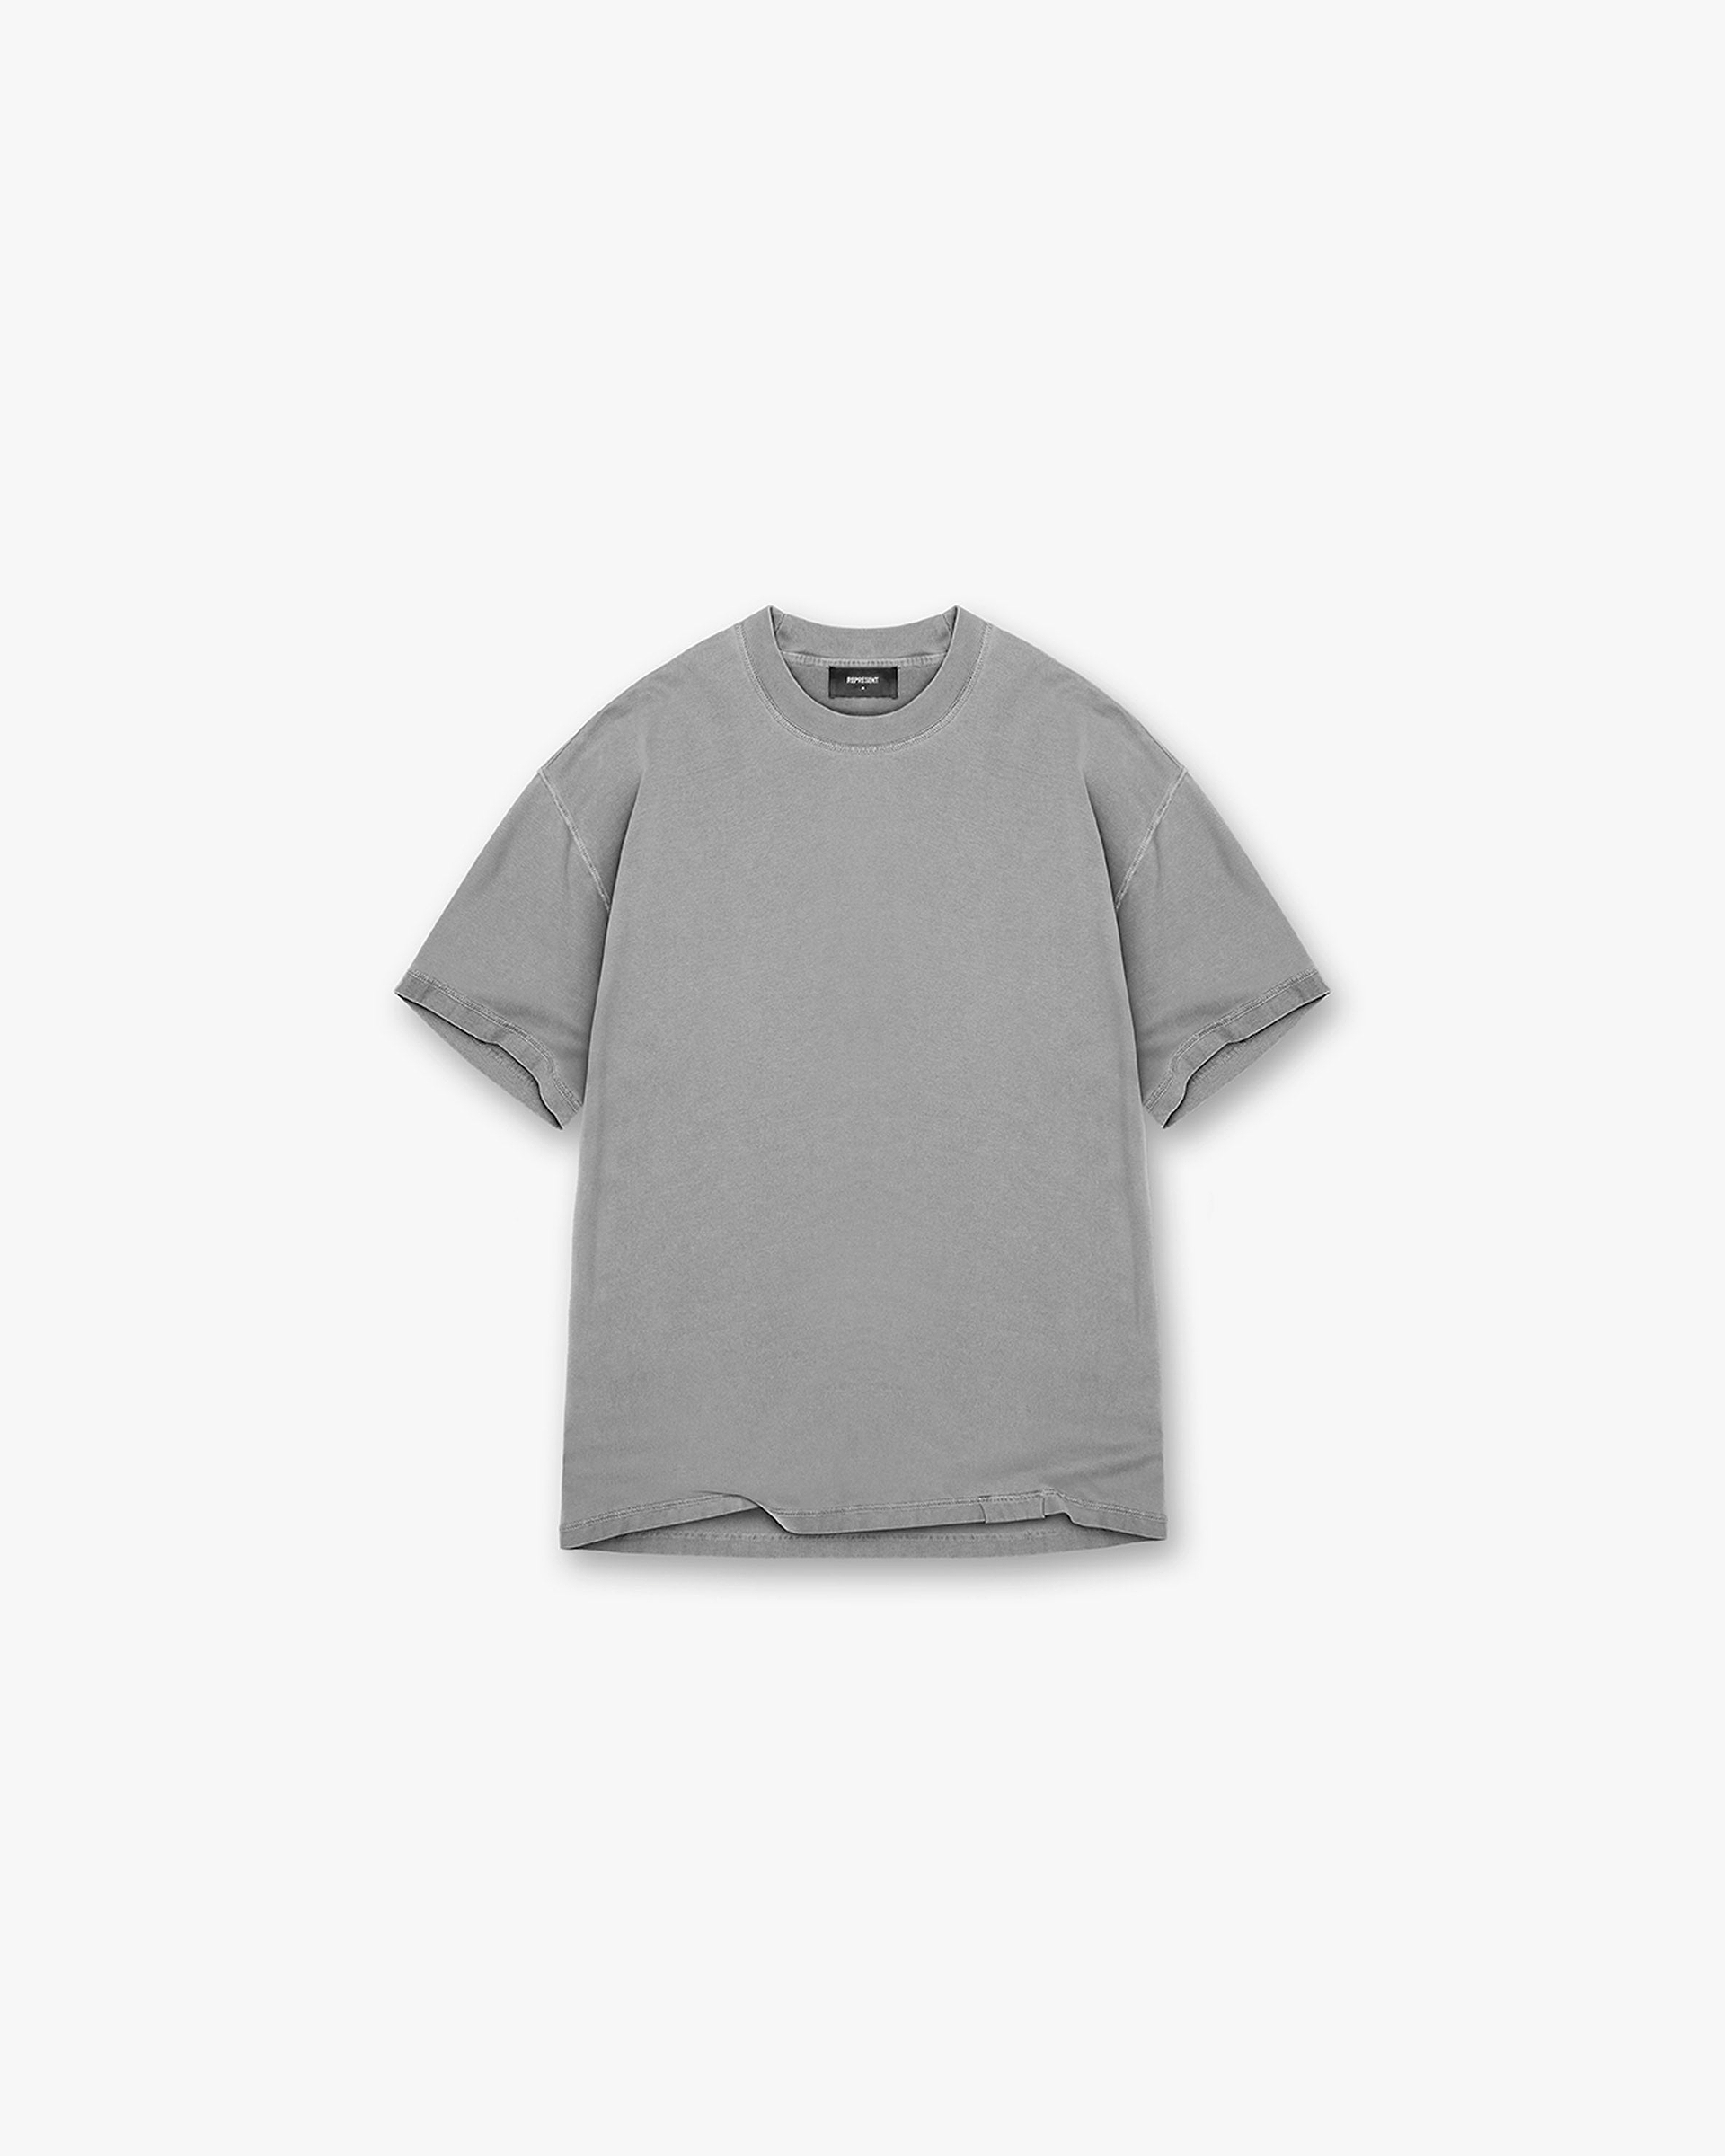 Initial T-Shirt - Ultimate Grey